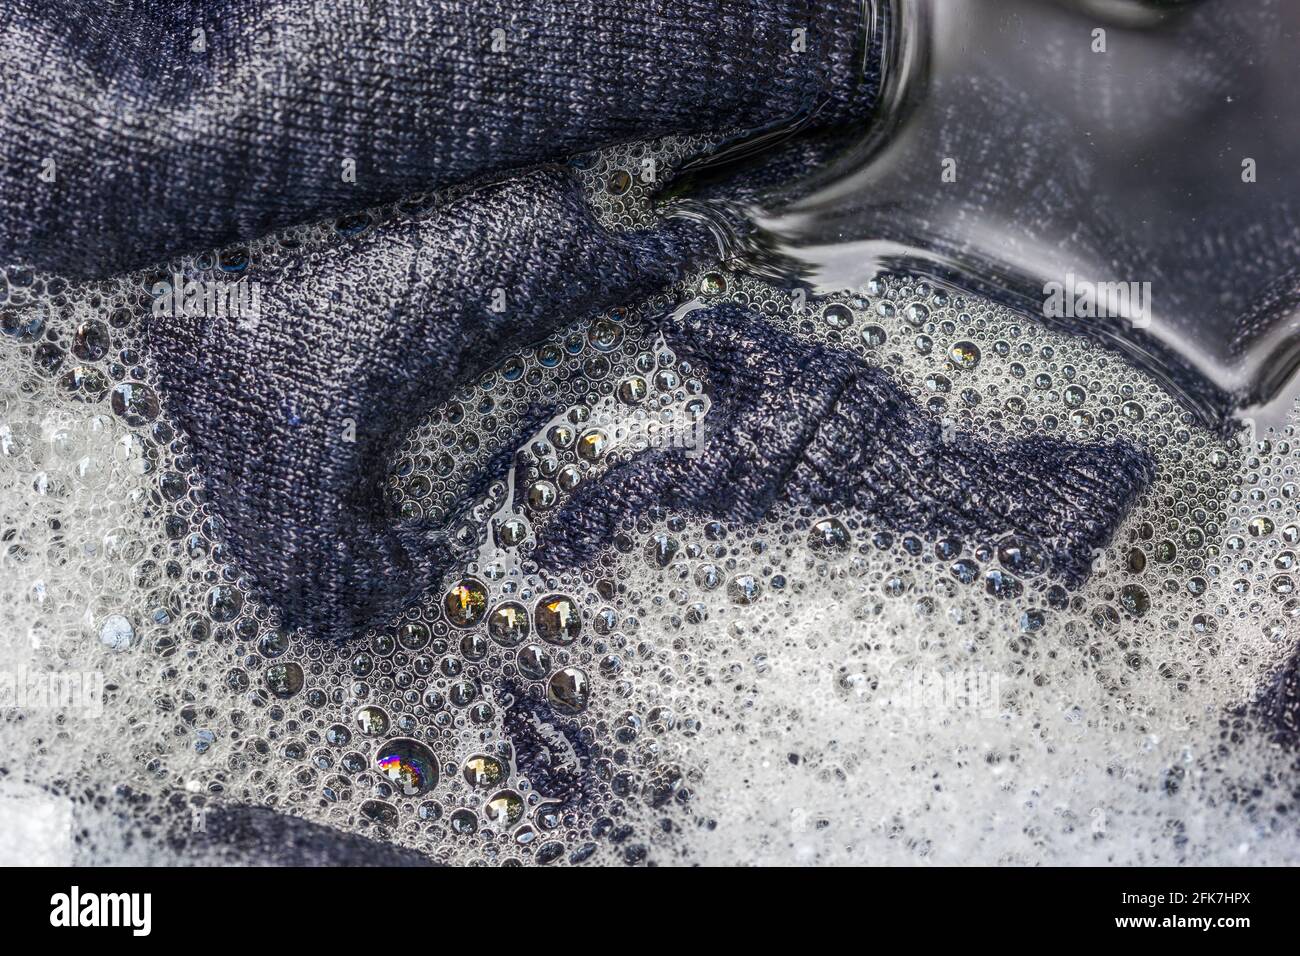 Primer plano de la ropa mojada empapada en jabón y agua adentro la lavadora  Fotografía de stock - Alamy